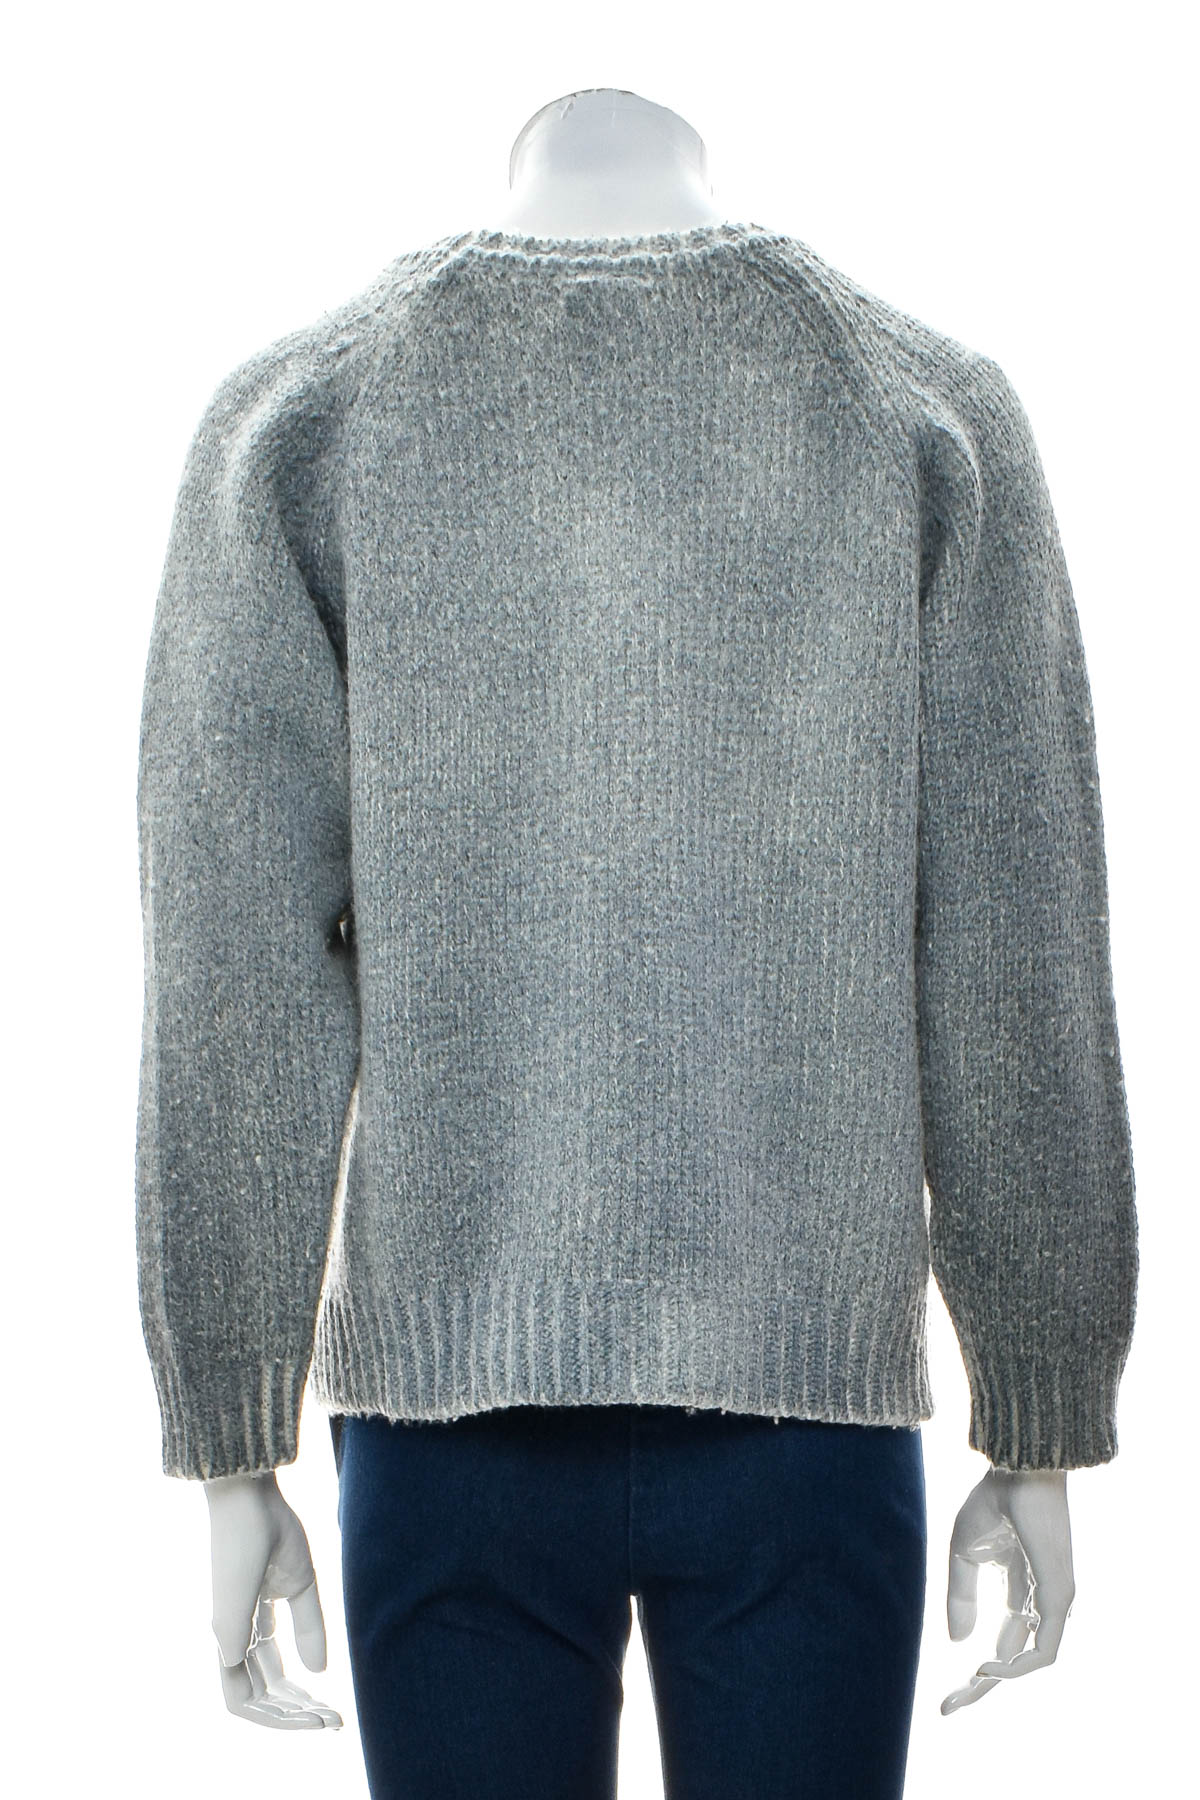 Women's sweater - 55DSL - 1